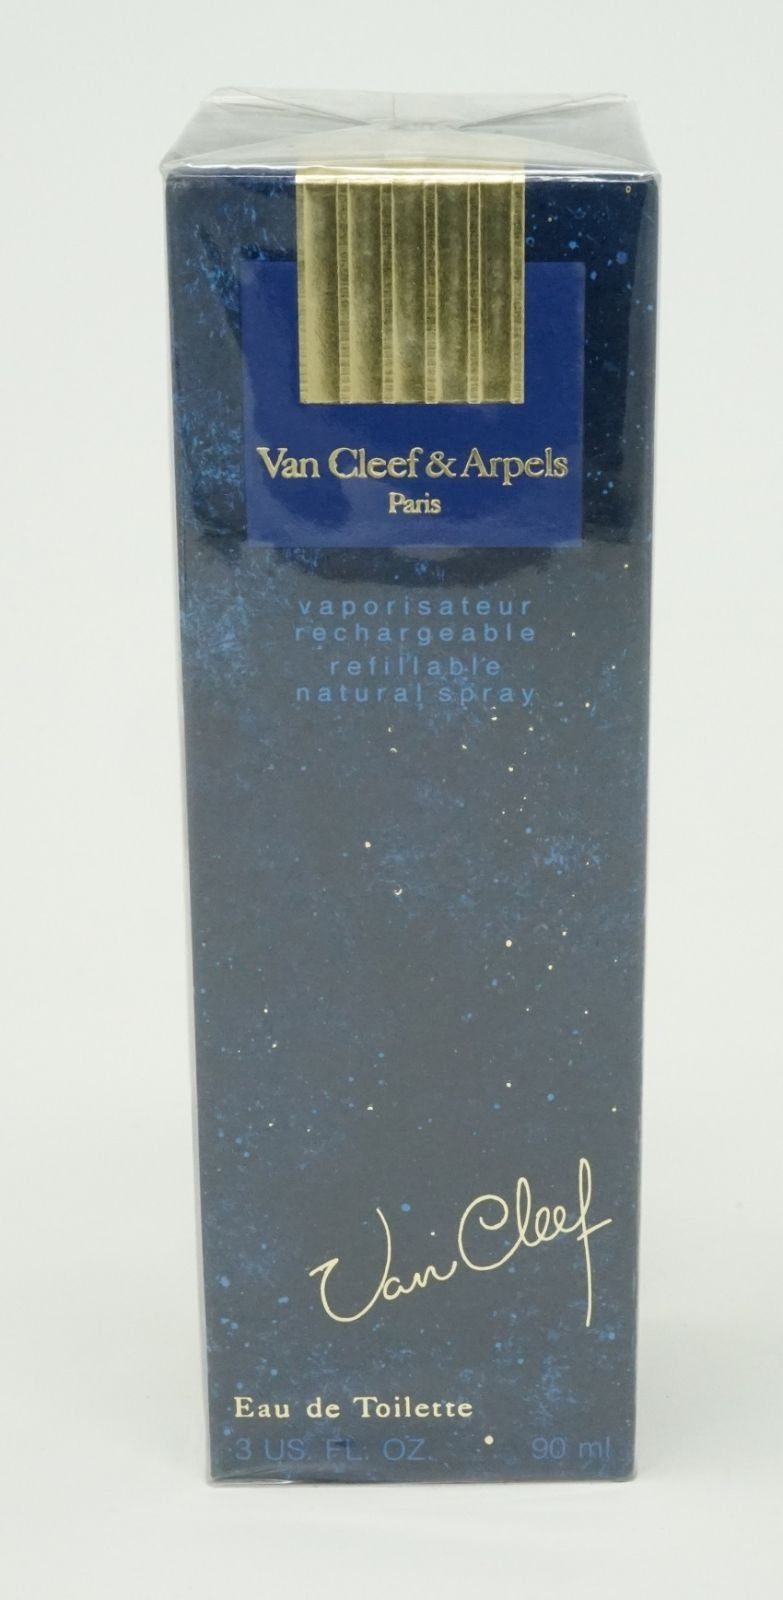 Van Cleef & Arpels Eau de Toilette Van Cleef & Arpels Van Cleed Eau de Toilette 90ml